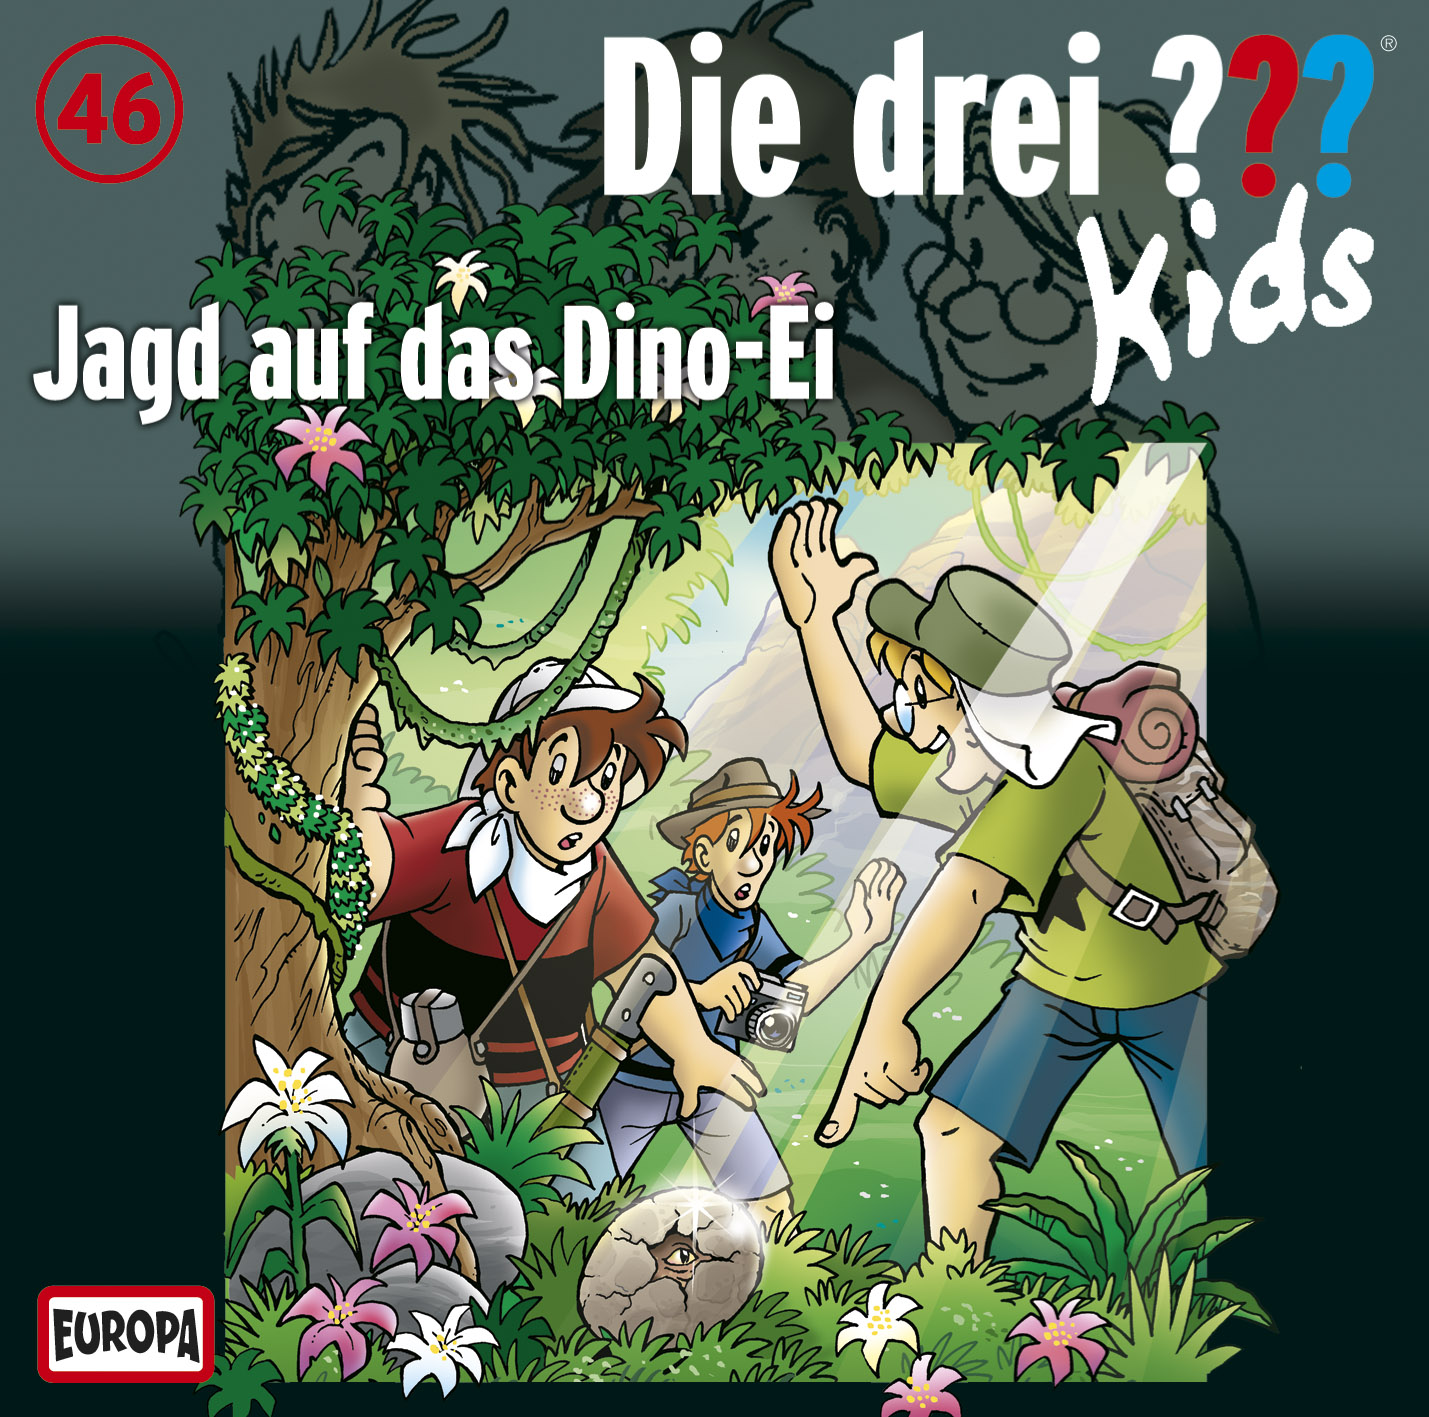 Die Drei ??? (Fragezeichen) Kids, Hörspiel-Folge 46: Jagd auf das Dino-Ei